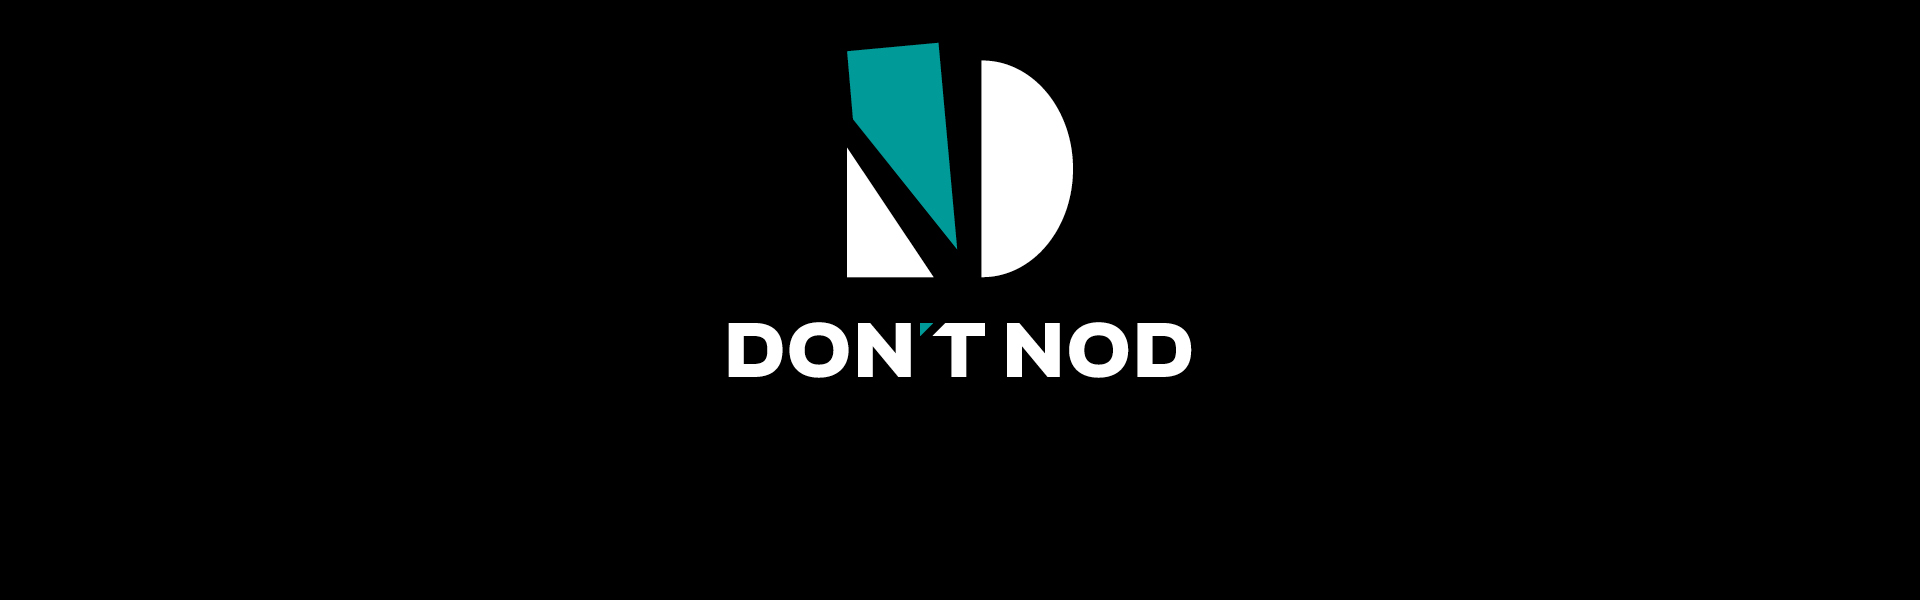 DON’T NOD dévoile une nouvelle identité visuelle